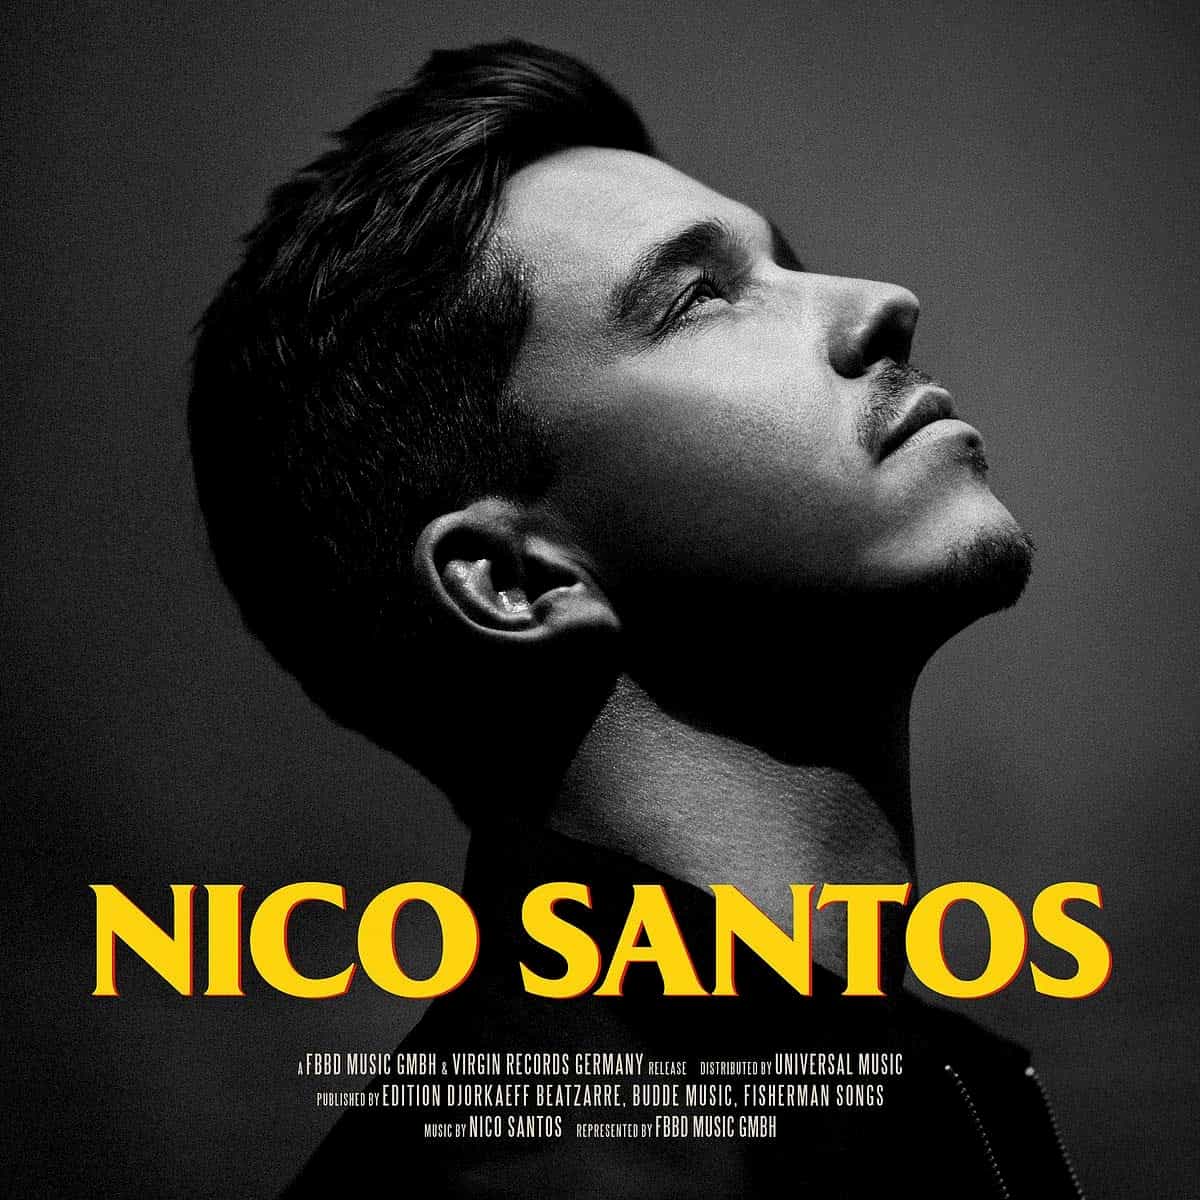 Nico Santos Album "Nico Santos" veröffentlicht - Ein Lichtblick!